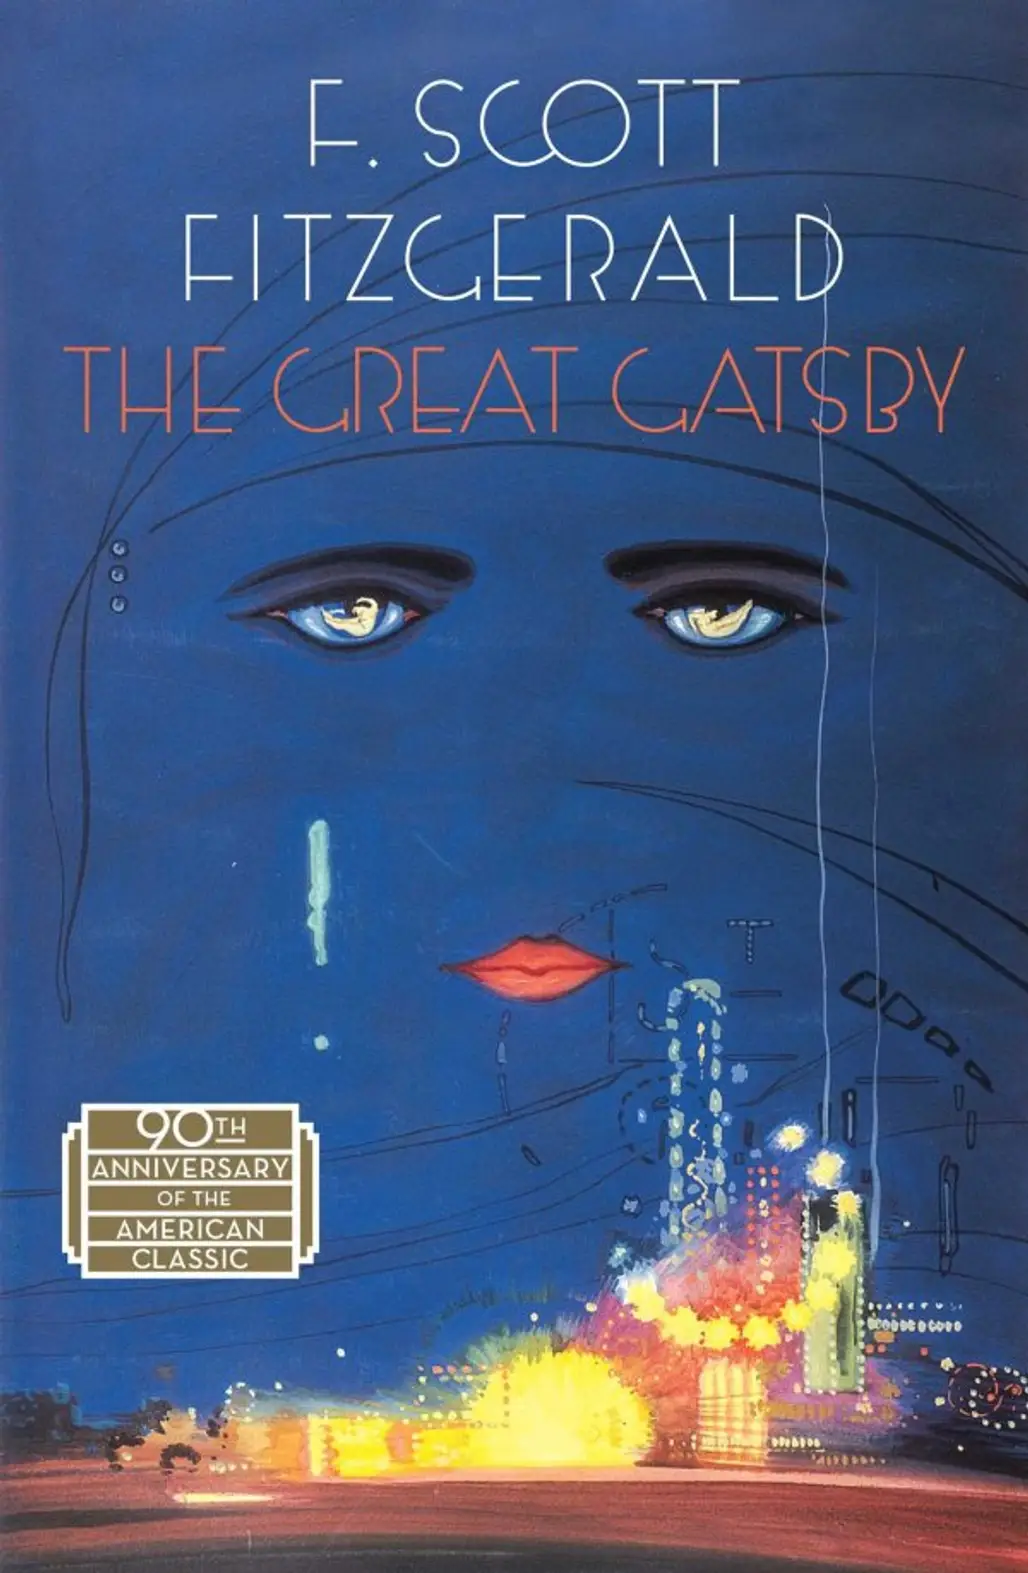 The Great Gatsby – F. Scott Fitzgerald